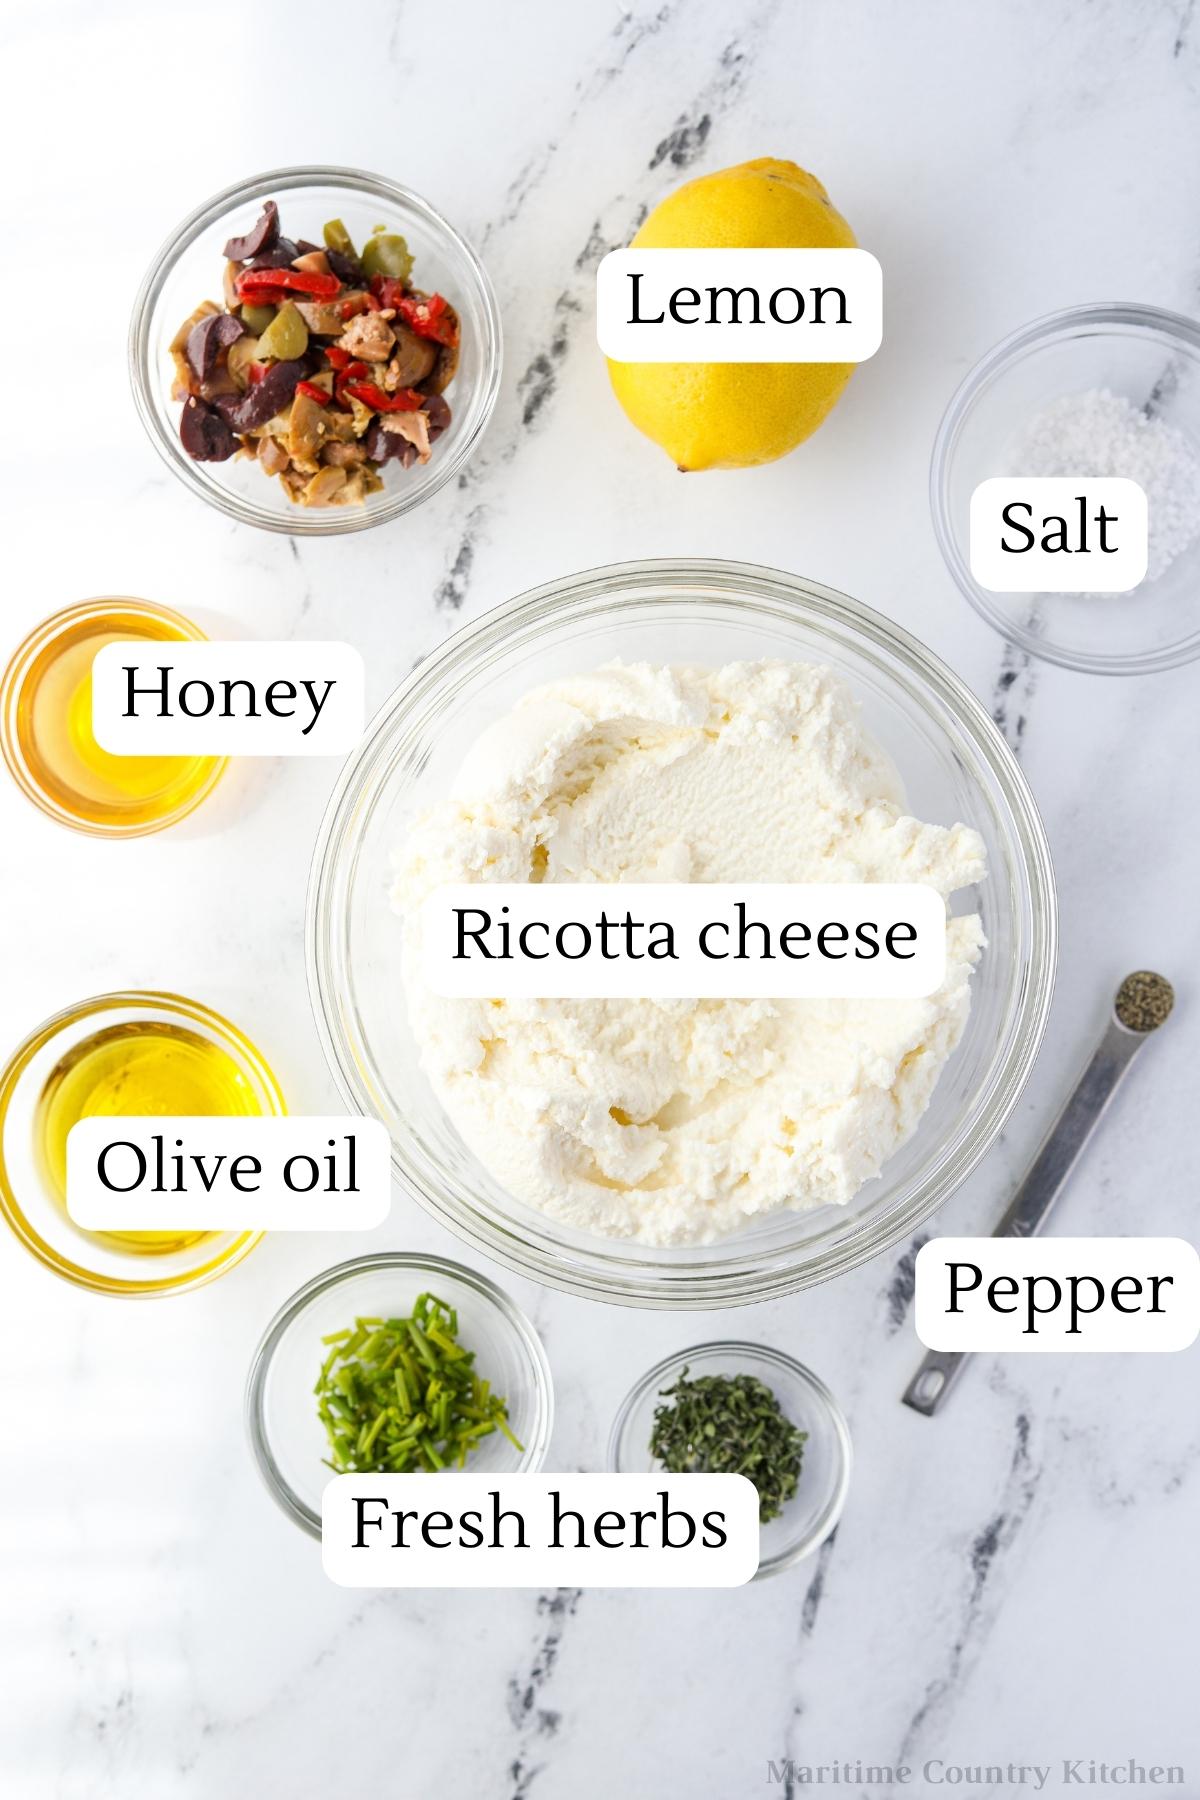 The ingredients needed to make whipped ricotta: ricotta cheese, olive oil, lemon, fresh herbs, salt, pepper, etc.